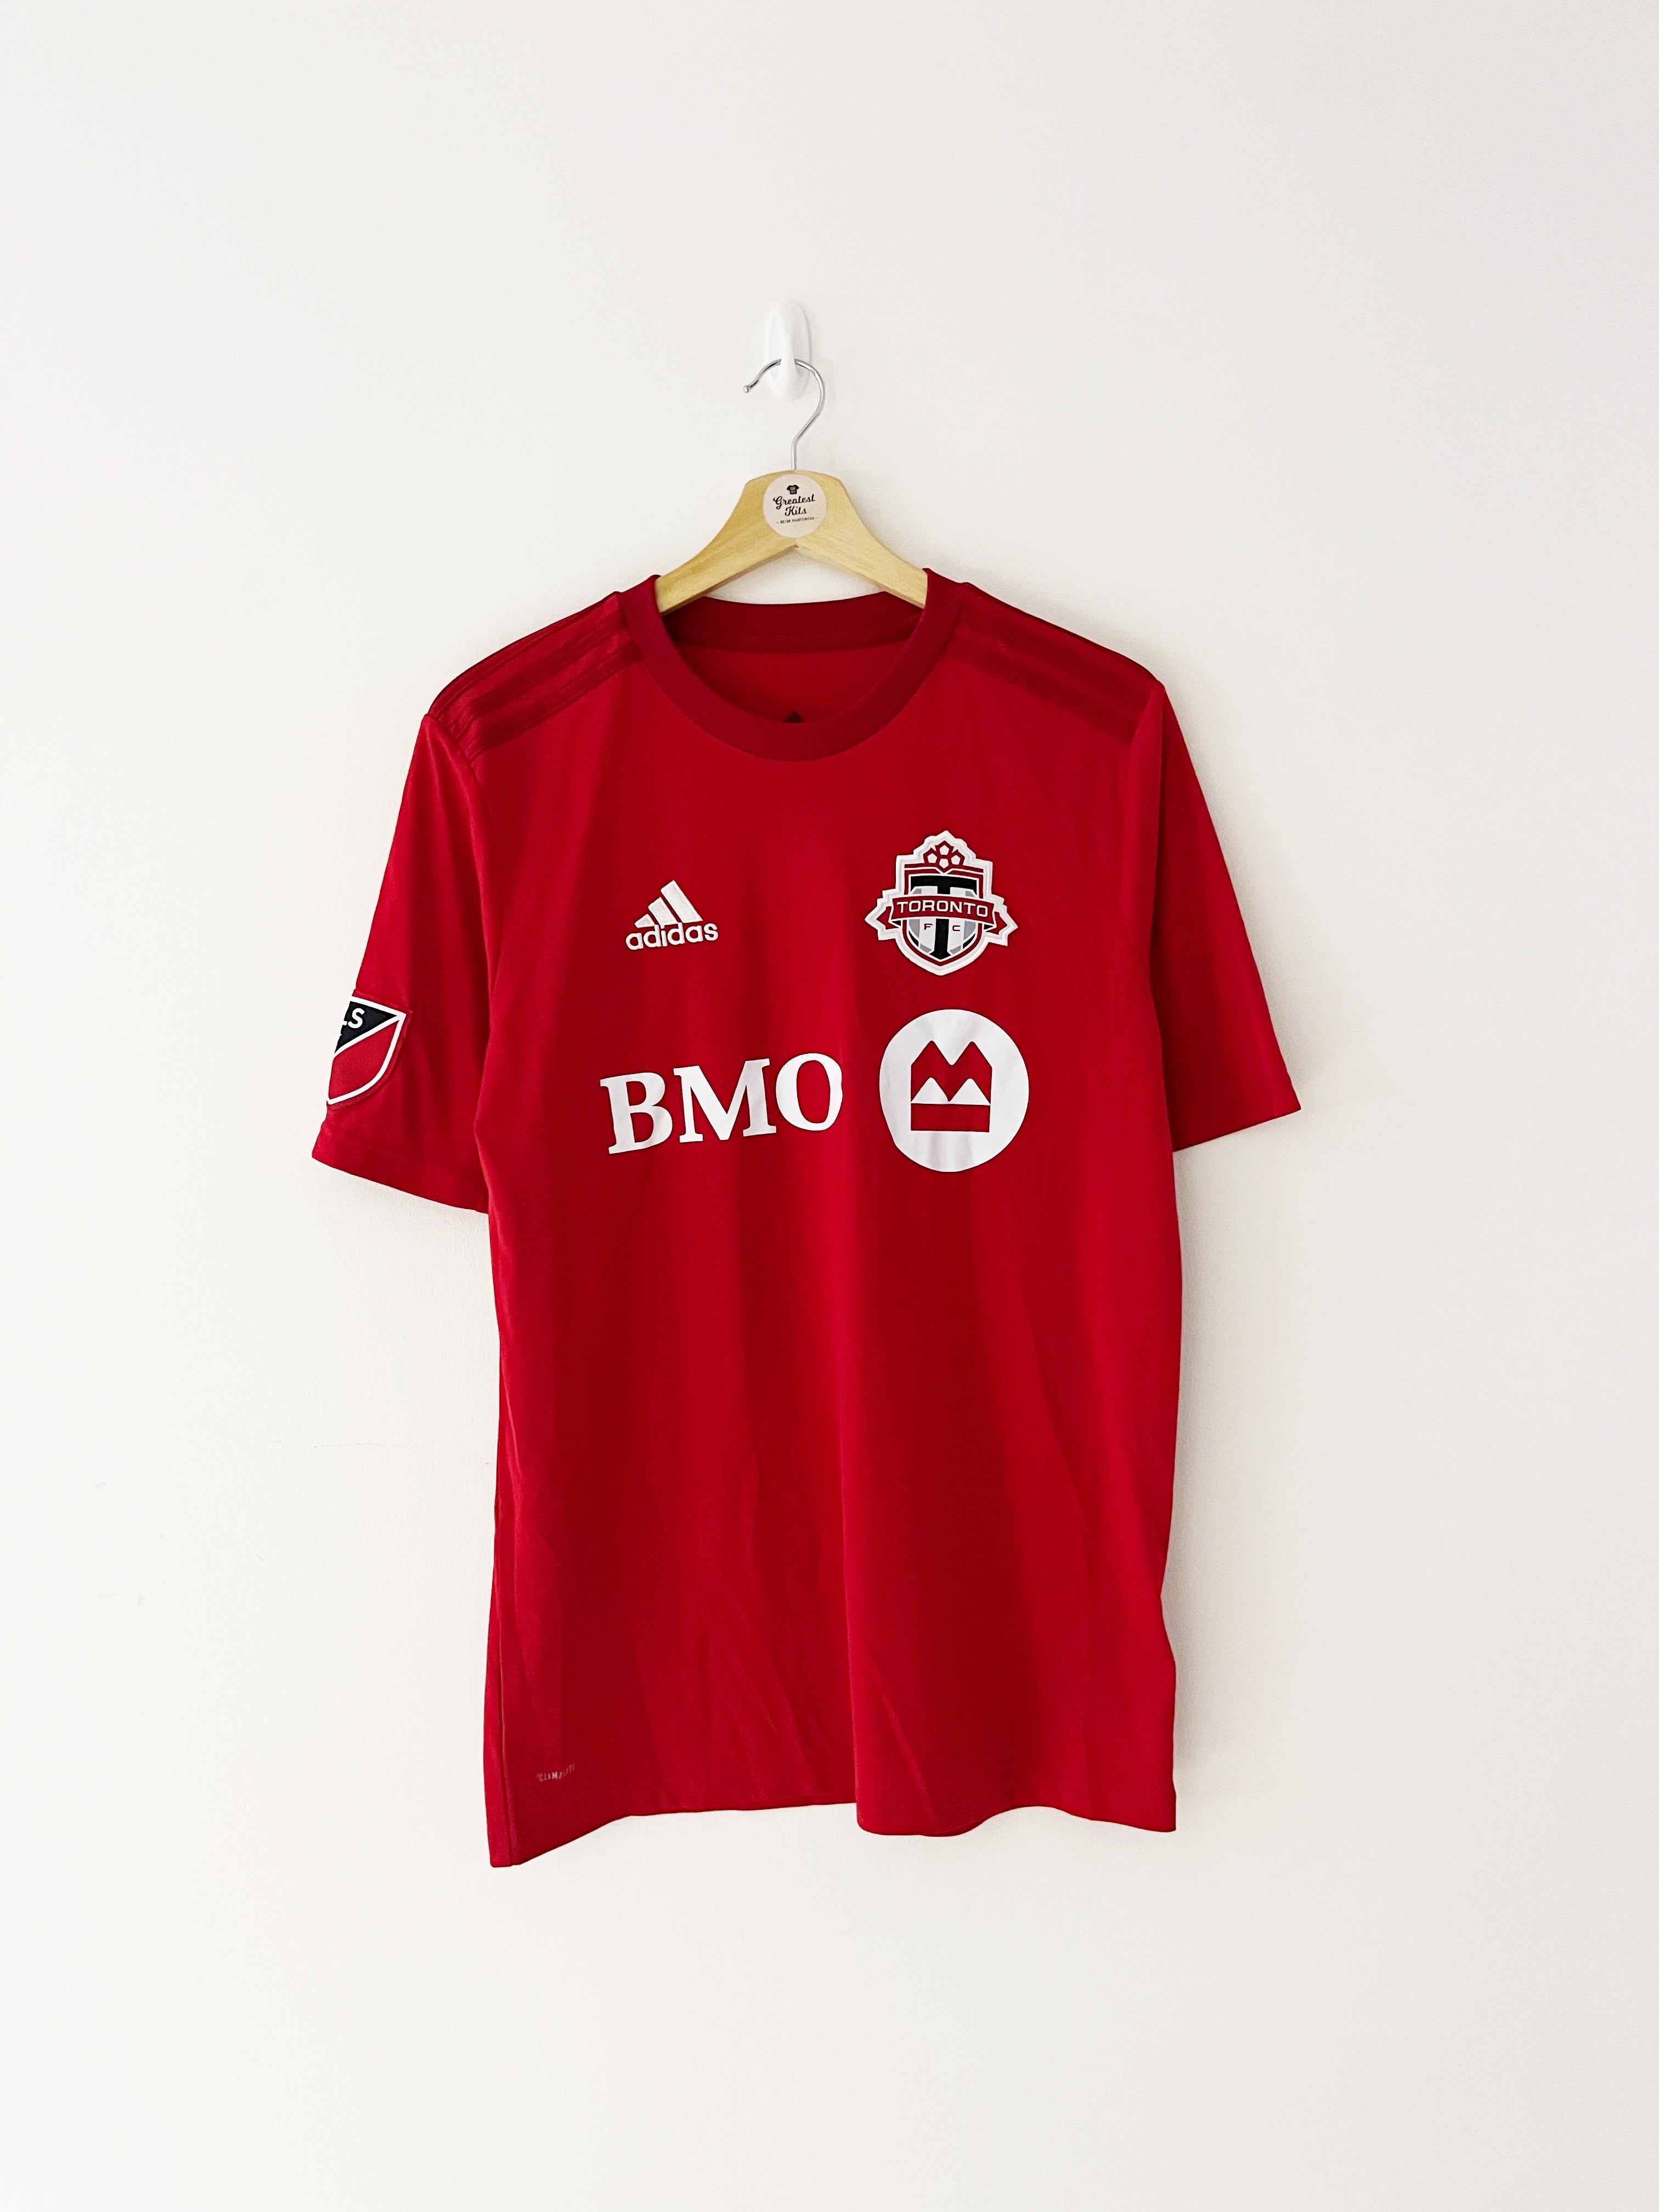 2019/20 Toronto FC Home Shirt (Y) 9/10